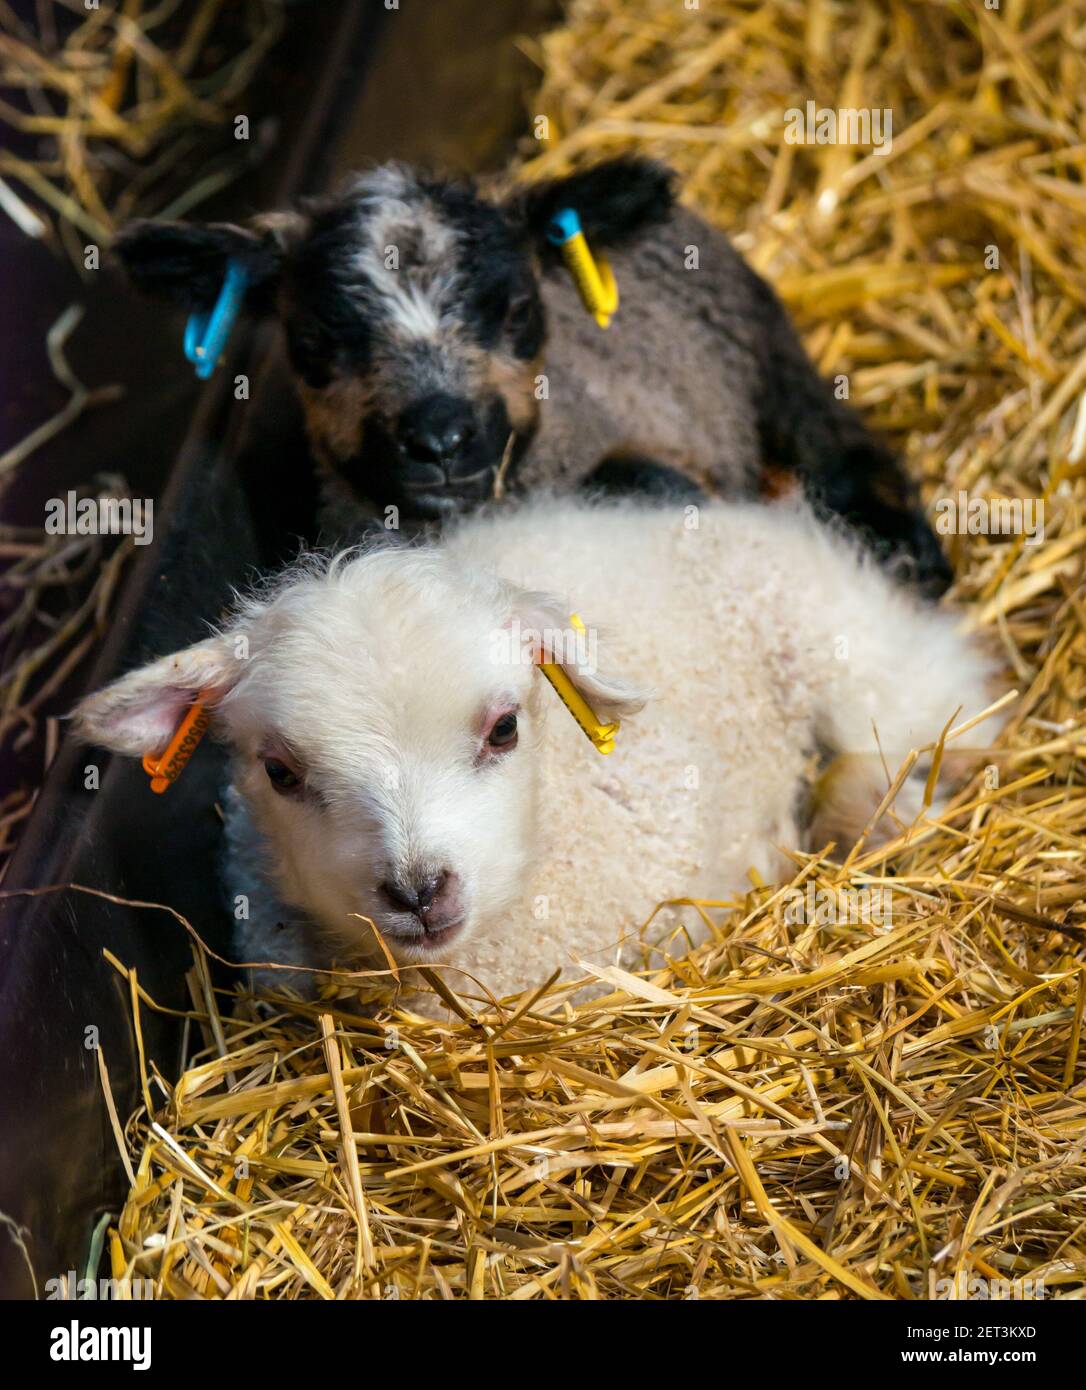 Lindo recién nacido ovejas Shetland cordero gemelos, uno a Katmoget, en paja en el granero, Escocia, Reino Unido Foto de stock